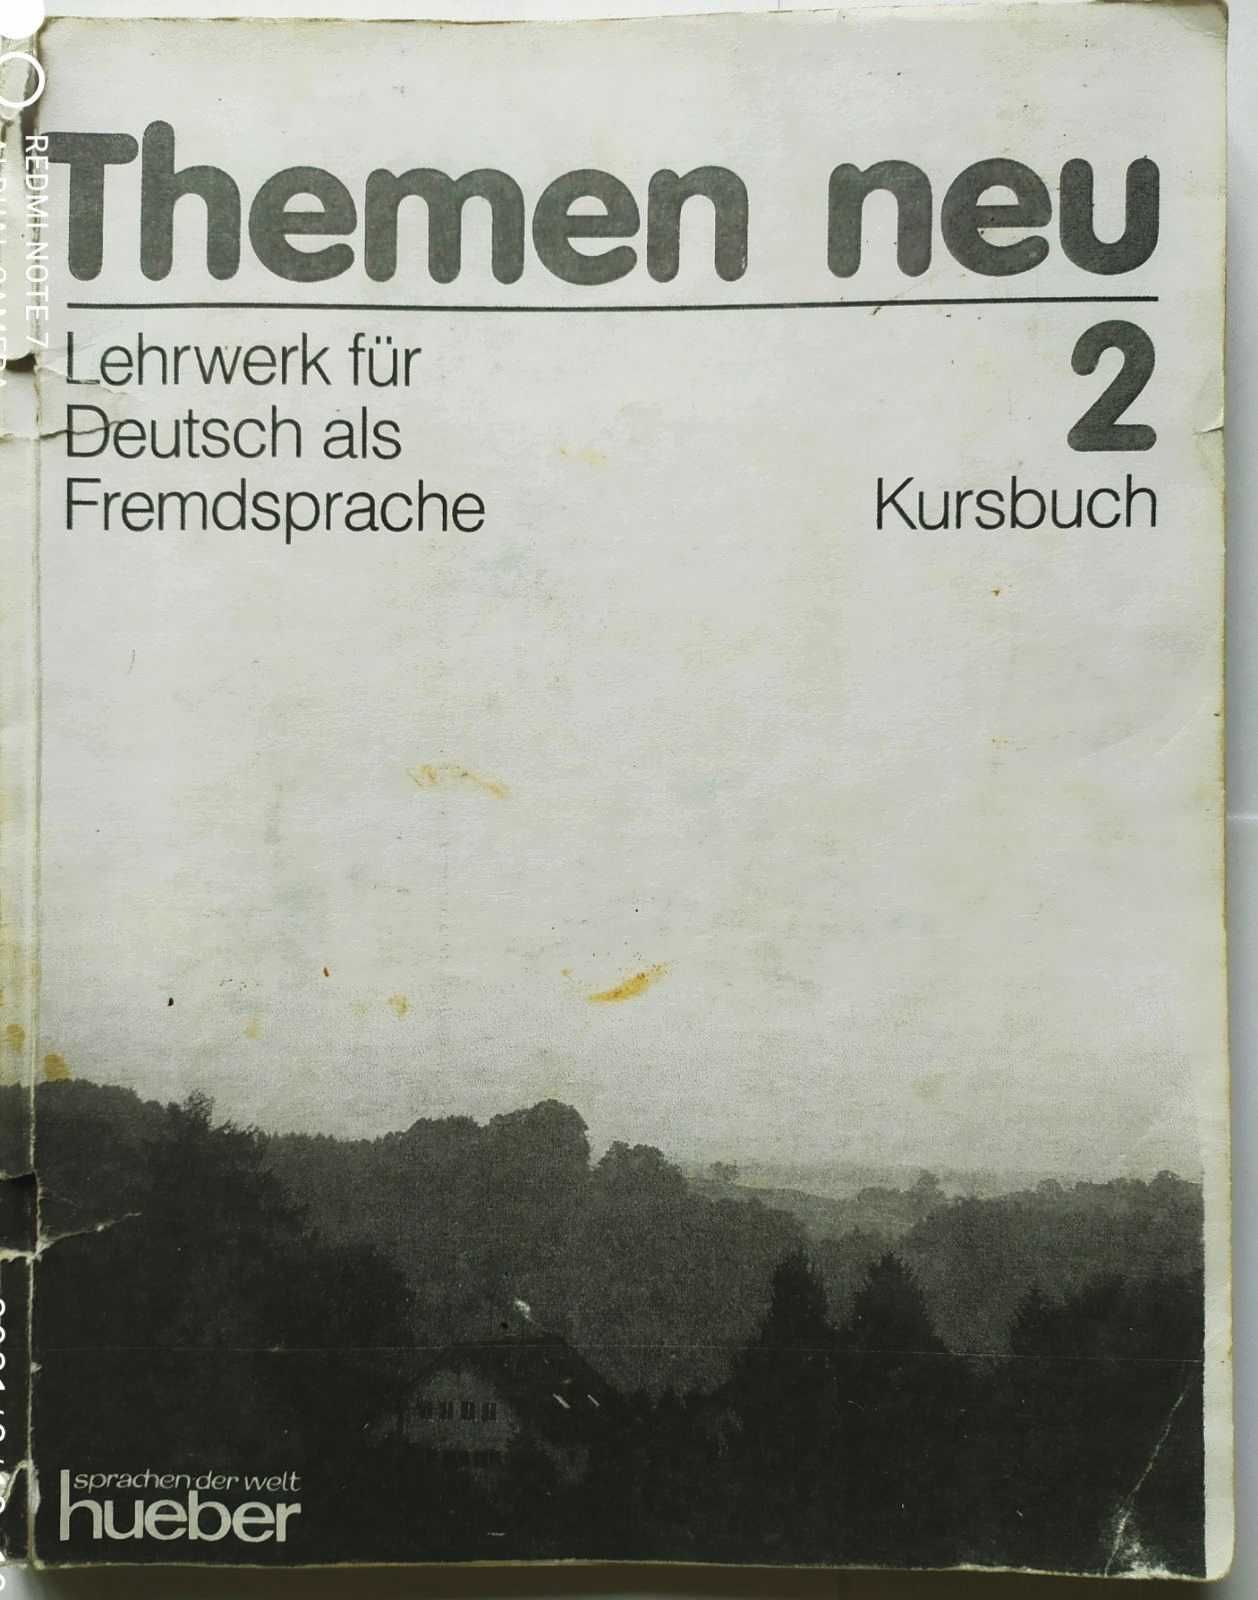 Немецкий начинающим. Комплект (4 книги)  Themen neu.